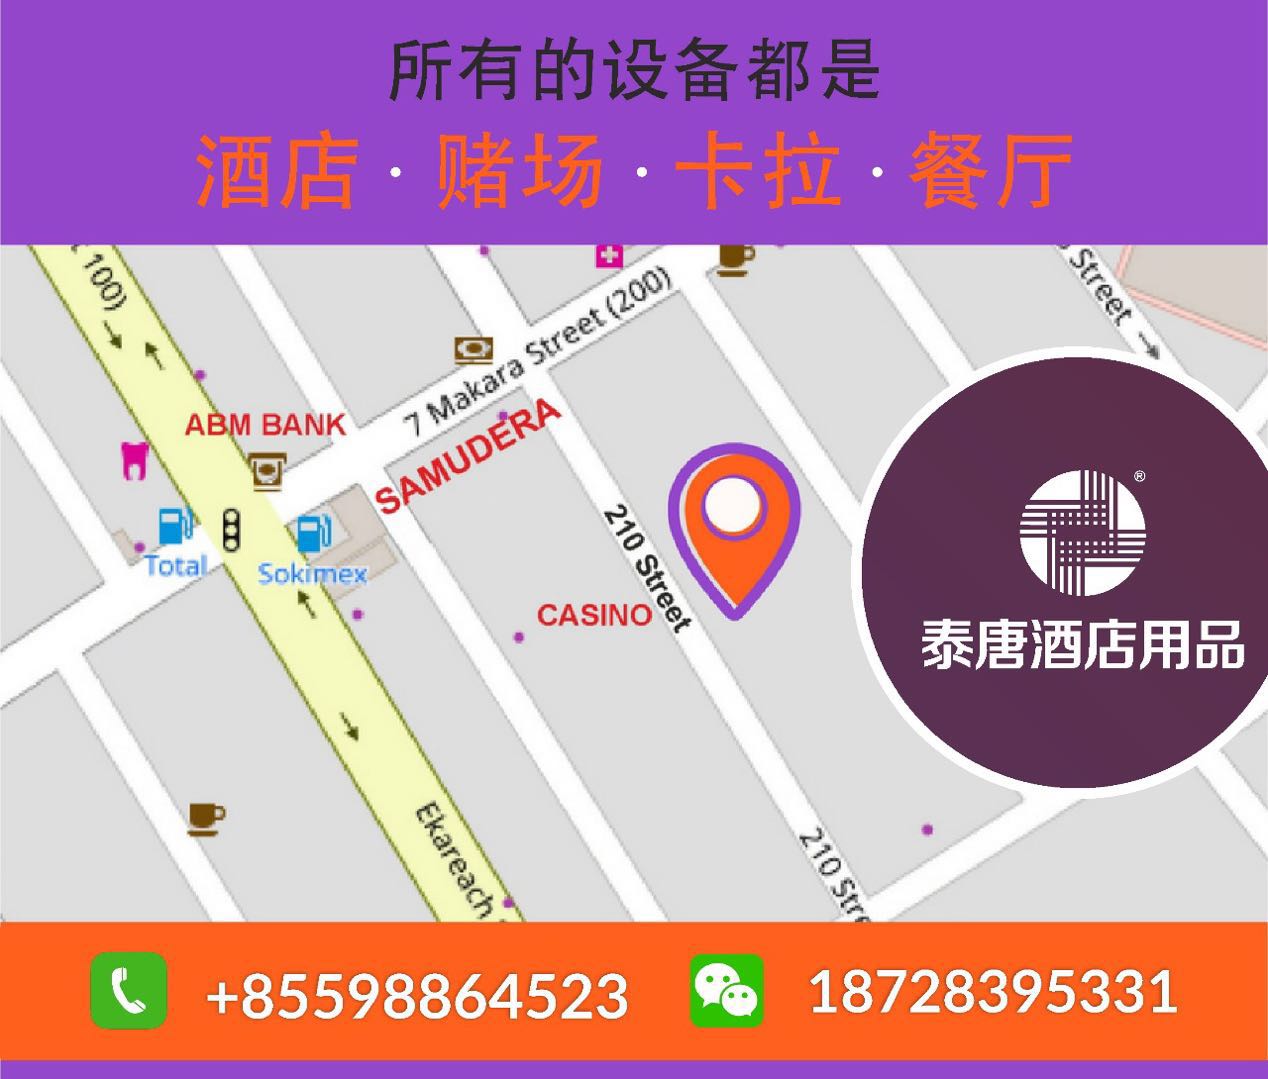 WeChat Image_20180725084947.jpg